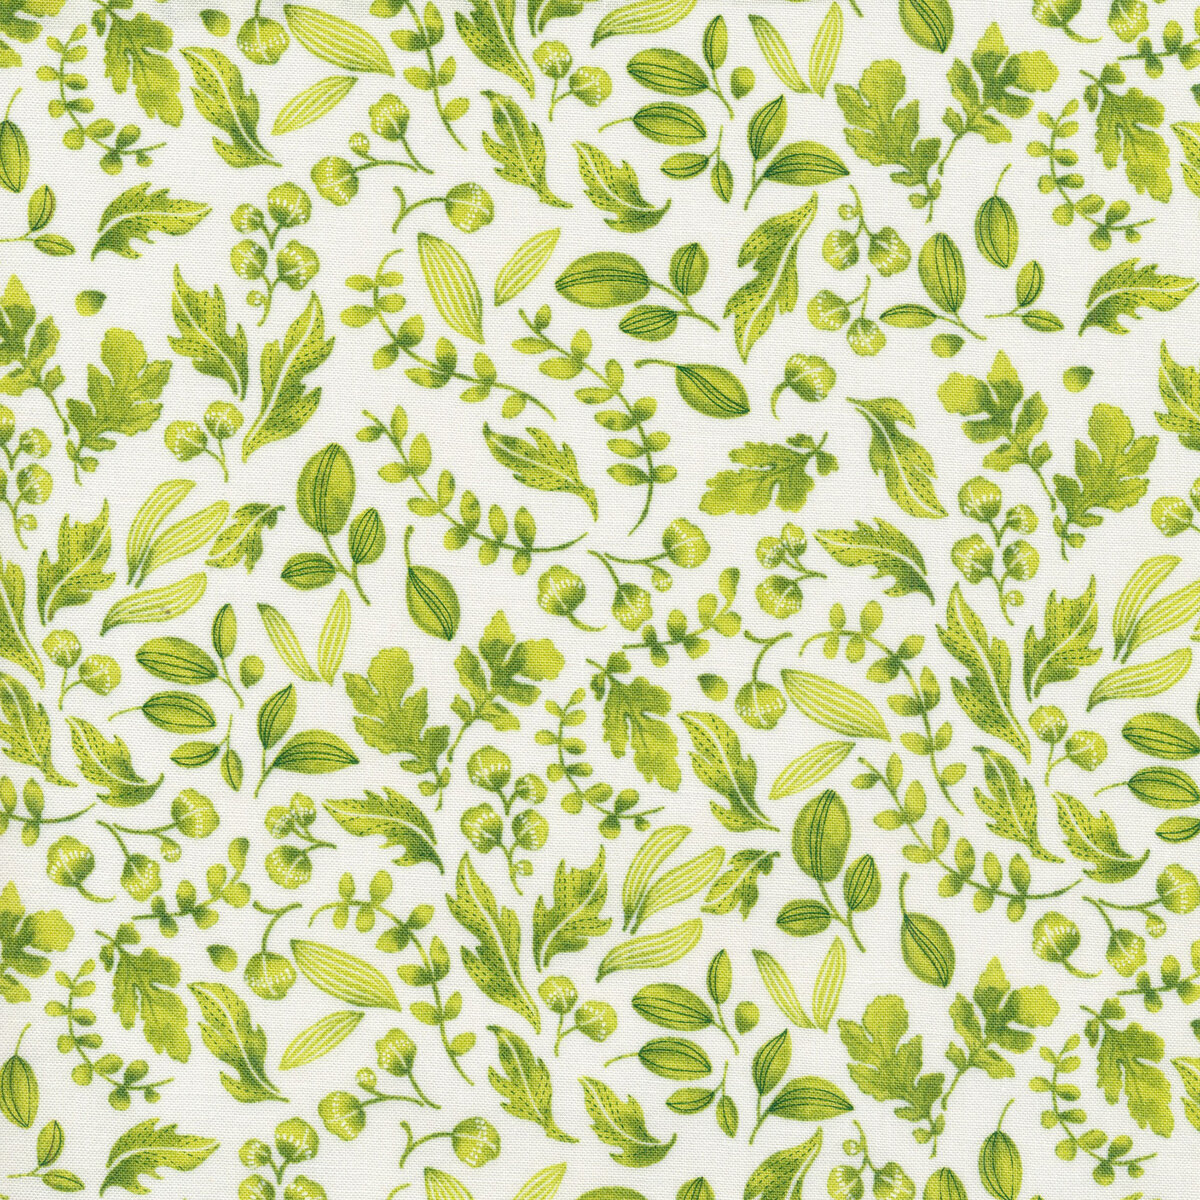 Wild Blossoms 48736-31 by Robin Pickens for Moda Fabrics | Shabby Fabrics